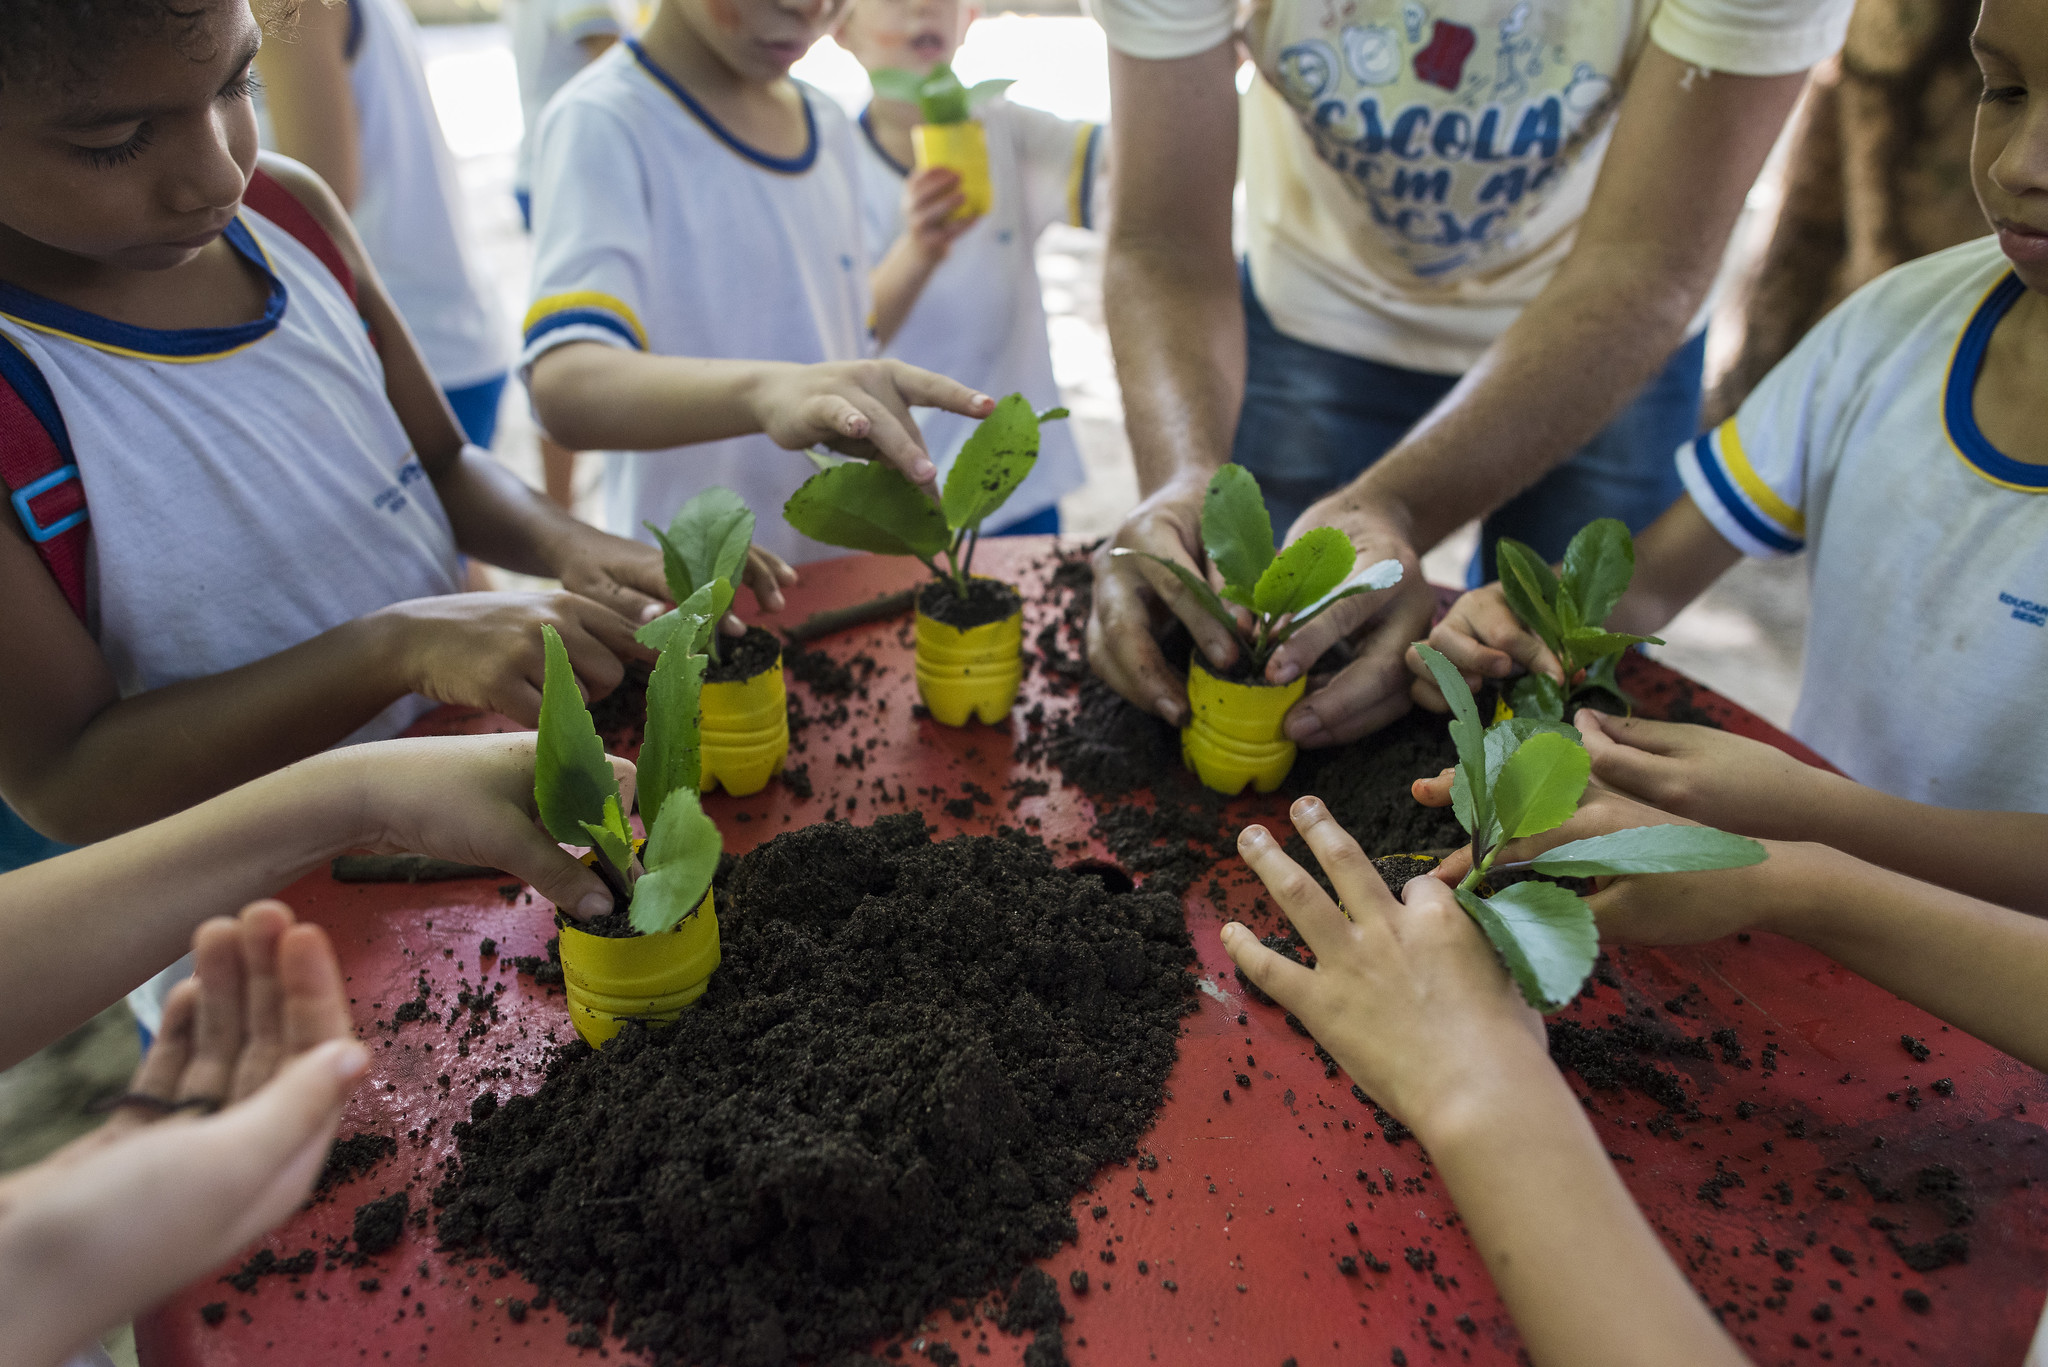 Sustentabilidade: a imagem mostra várias mudas de plantas sendo seguradas por crianças